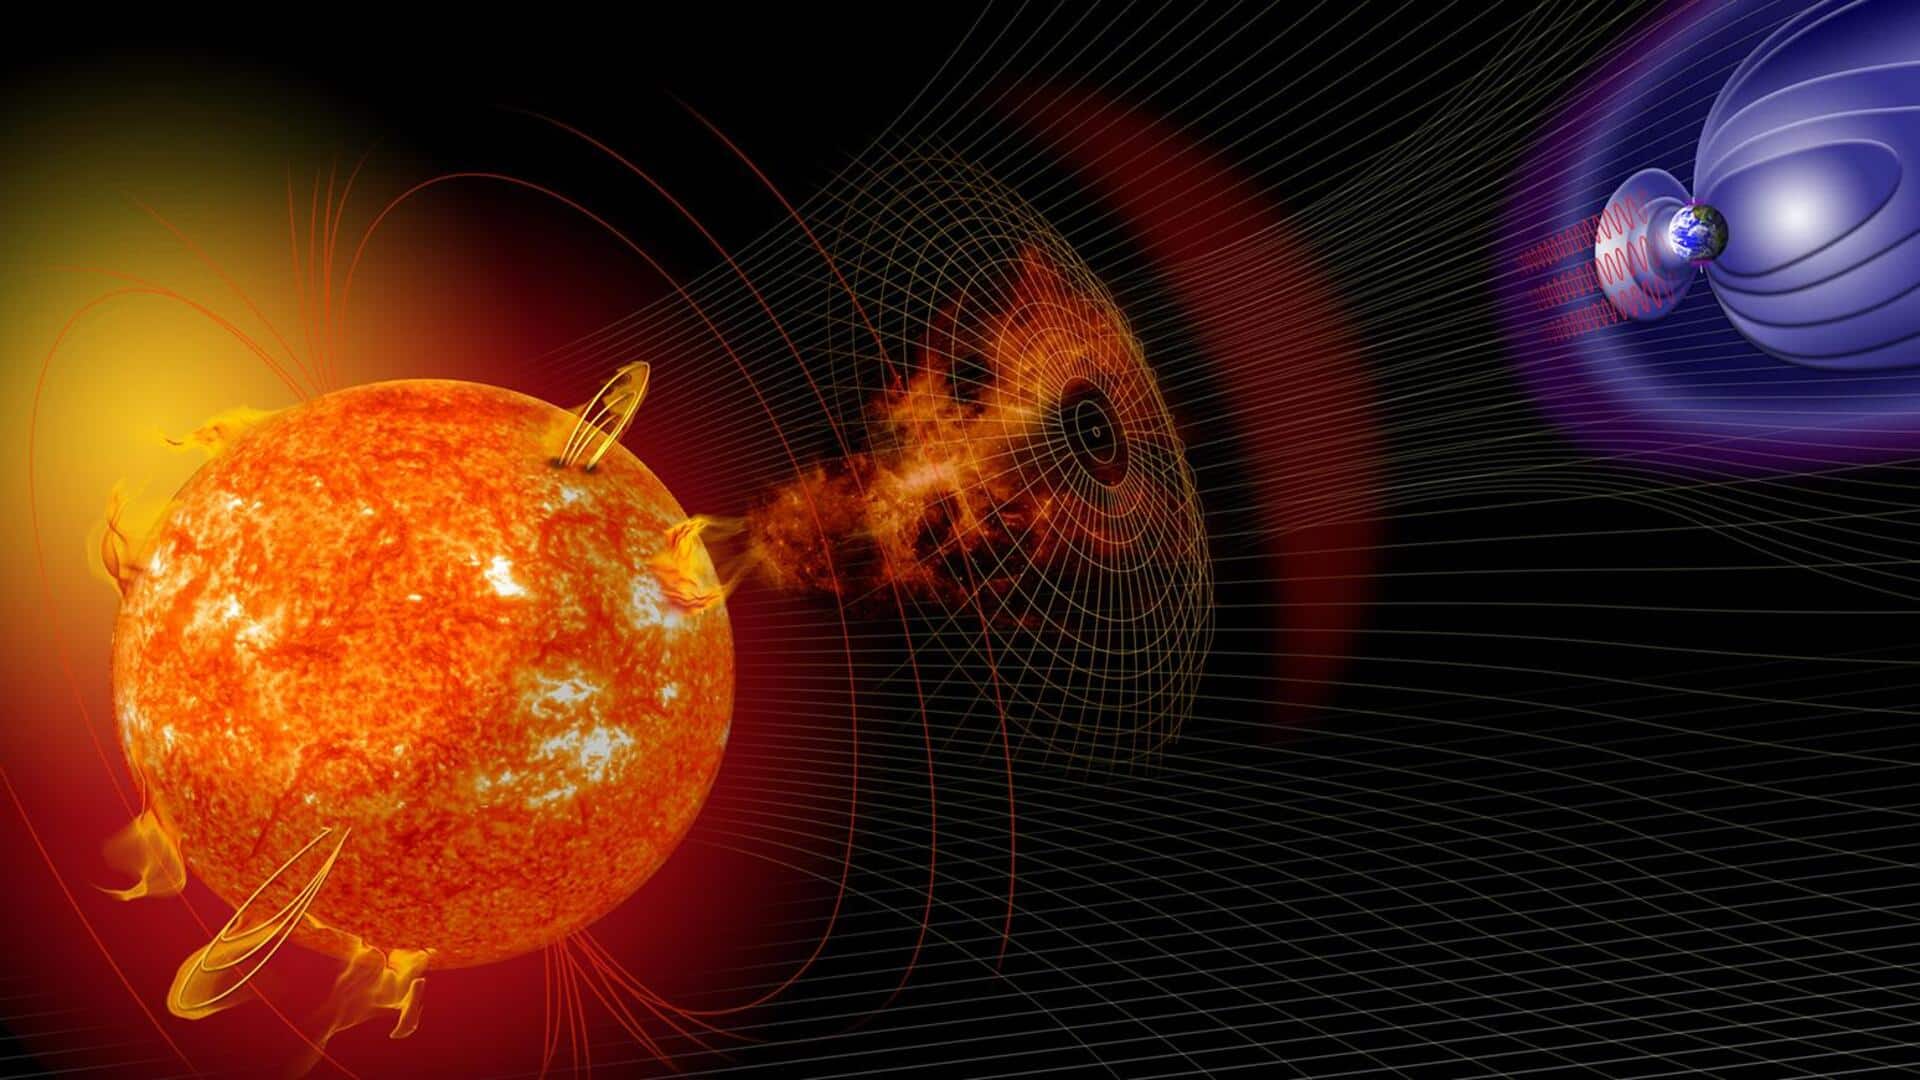 सनस्पॉट में हुआ विस्फोट, अगले 24 घंटे में पृथ्वी पर आ सकता है शक्तिशाली सौर तूफान 